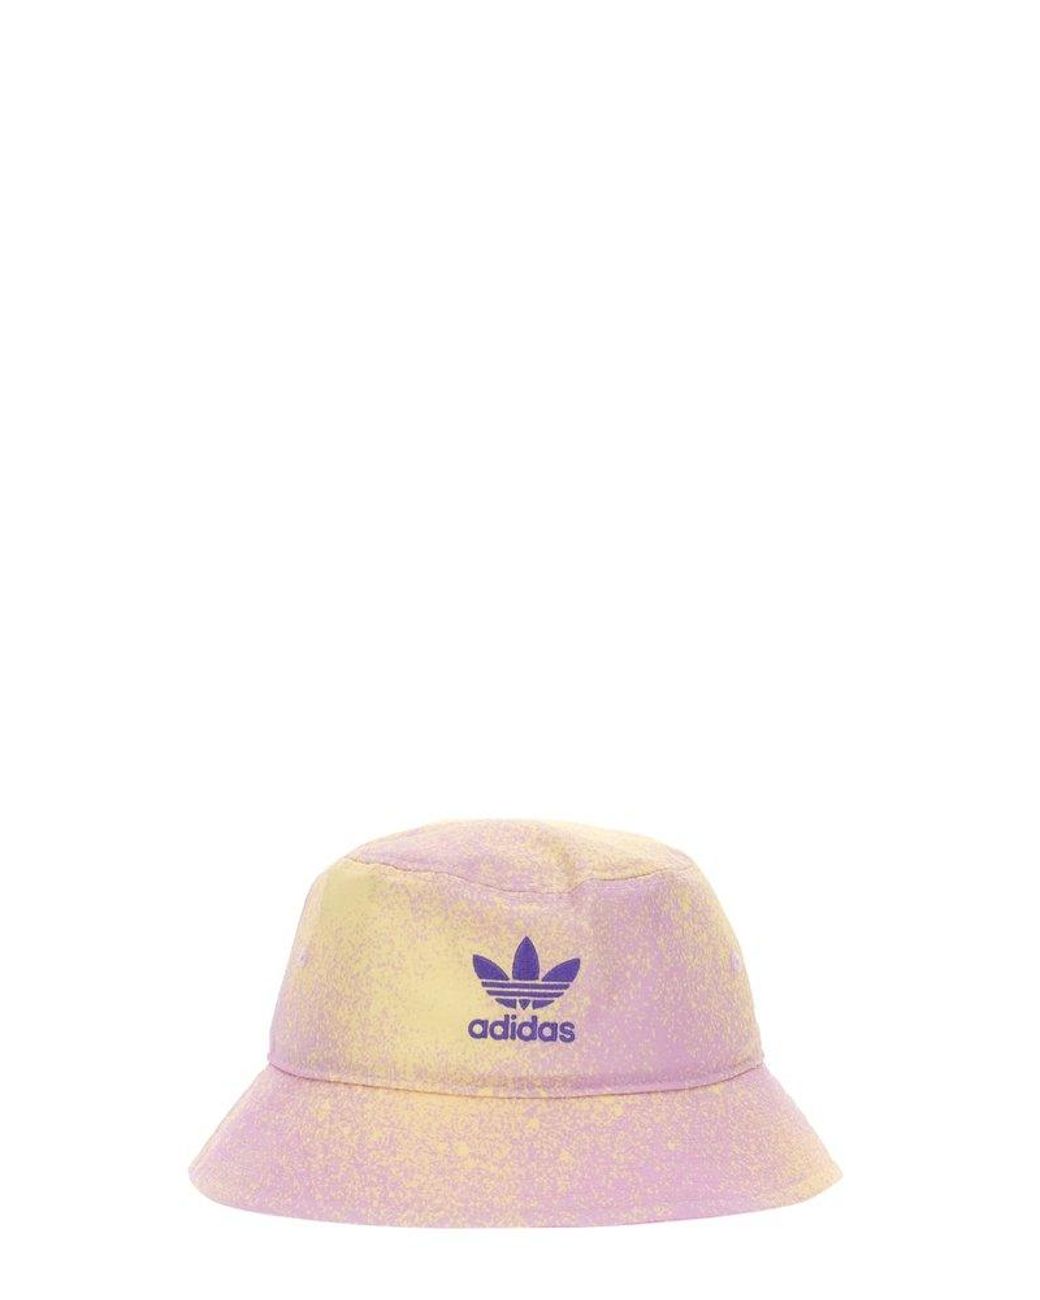 adidas Originals Cotton Bucket Hat in Pink | Lyst